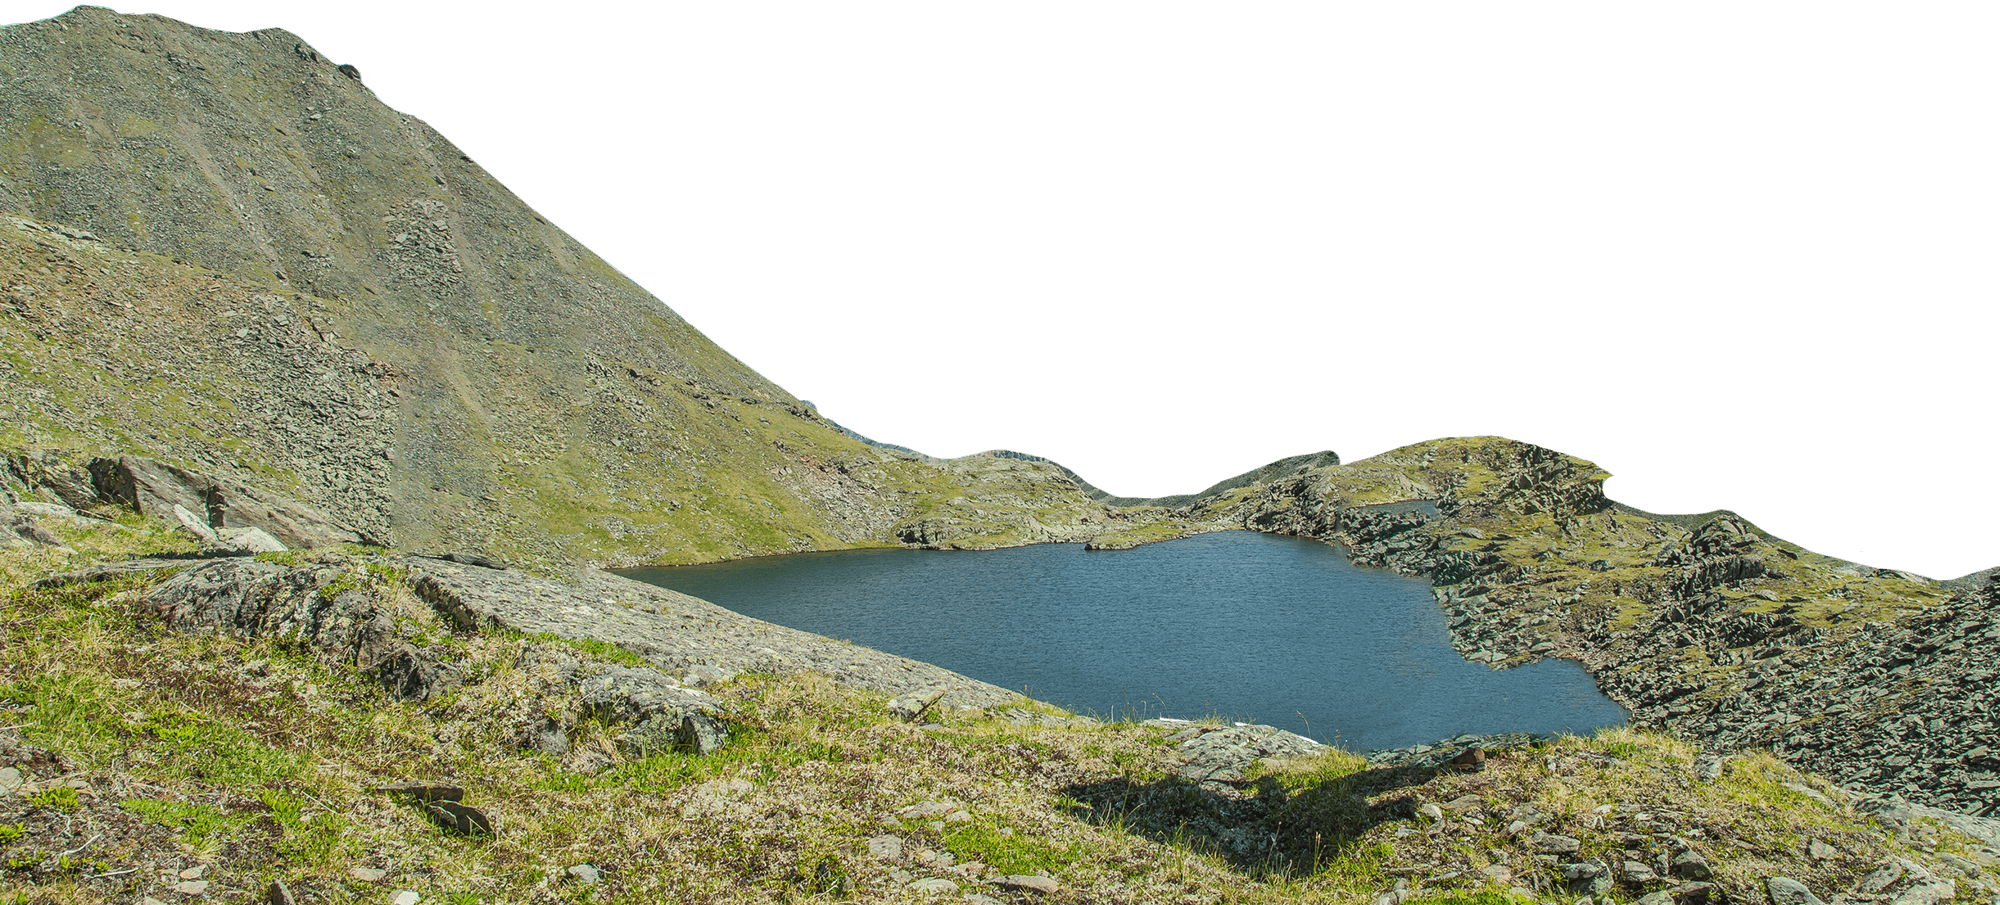 Freigestellter Bergsee